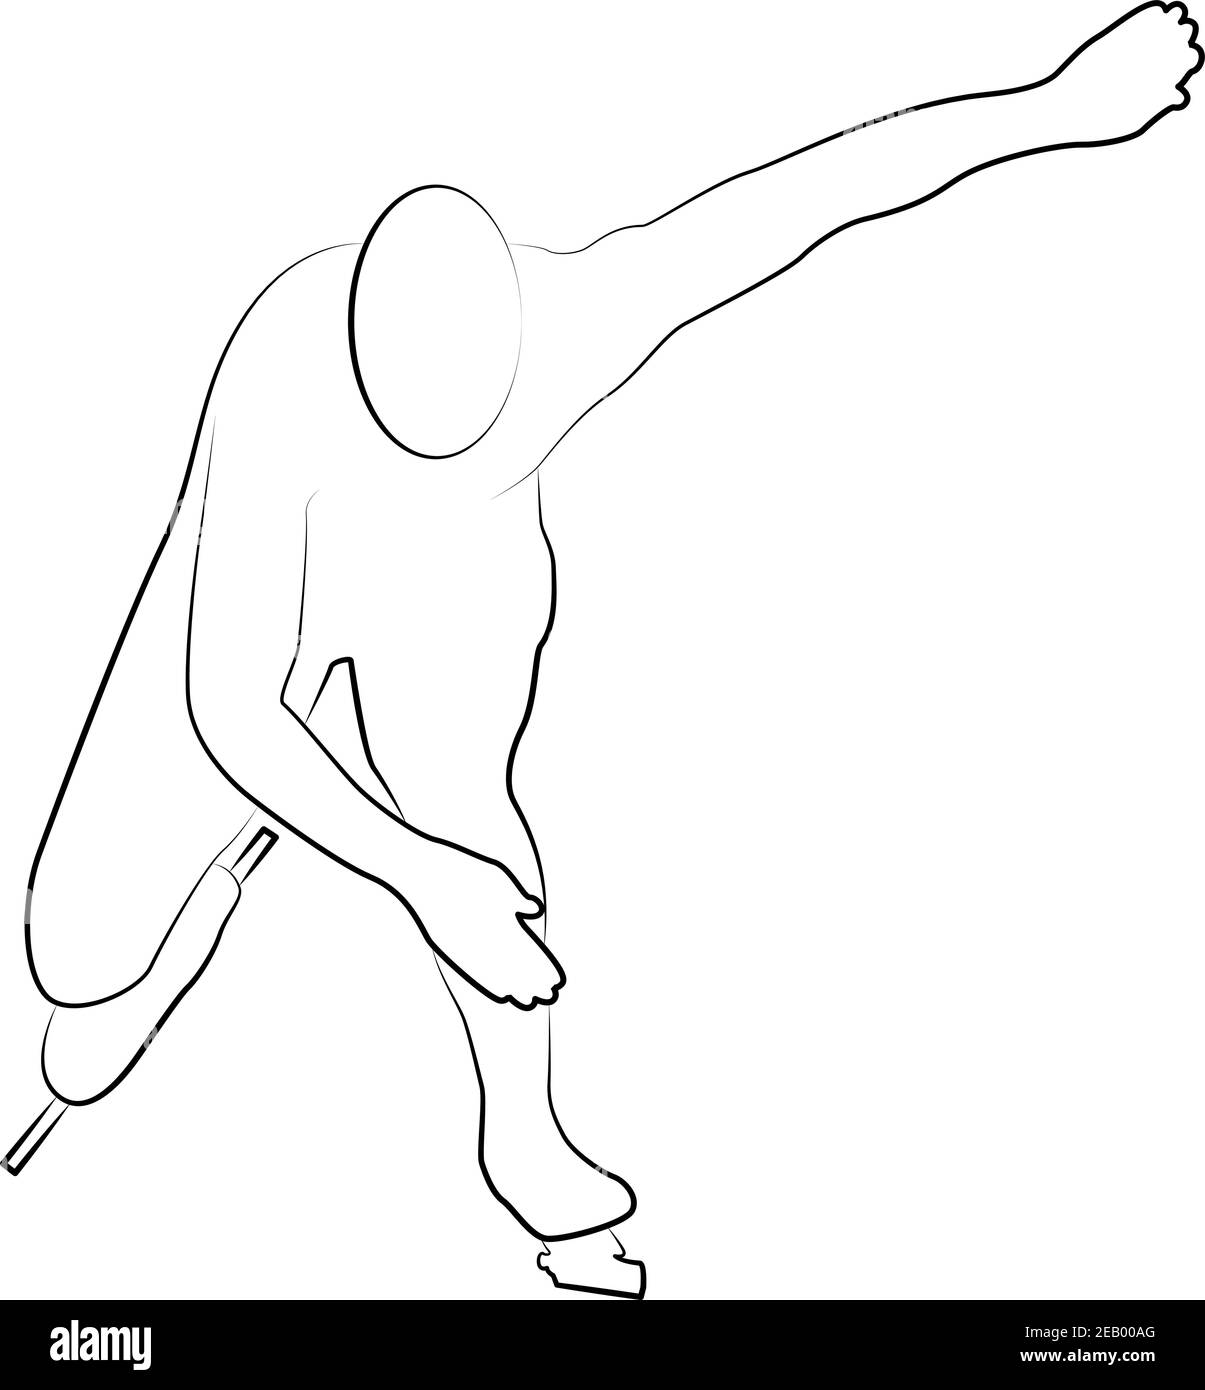 Patinage de vitesse, icône stylisée d'une ligne de silhouette d'un ensemble sportif. Vecteur EPS 10 Illustration de Vecteur